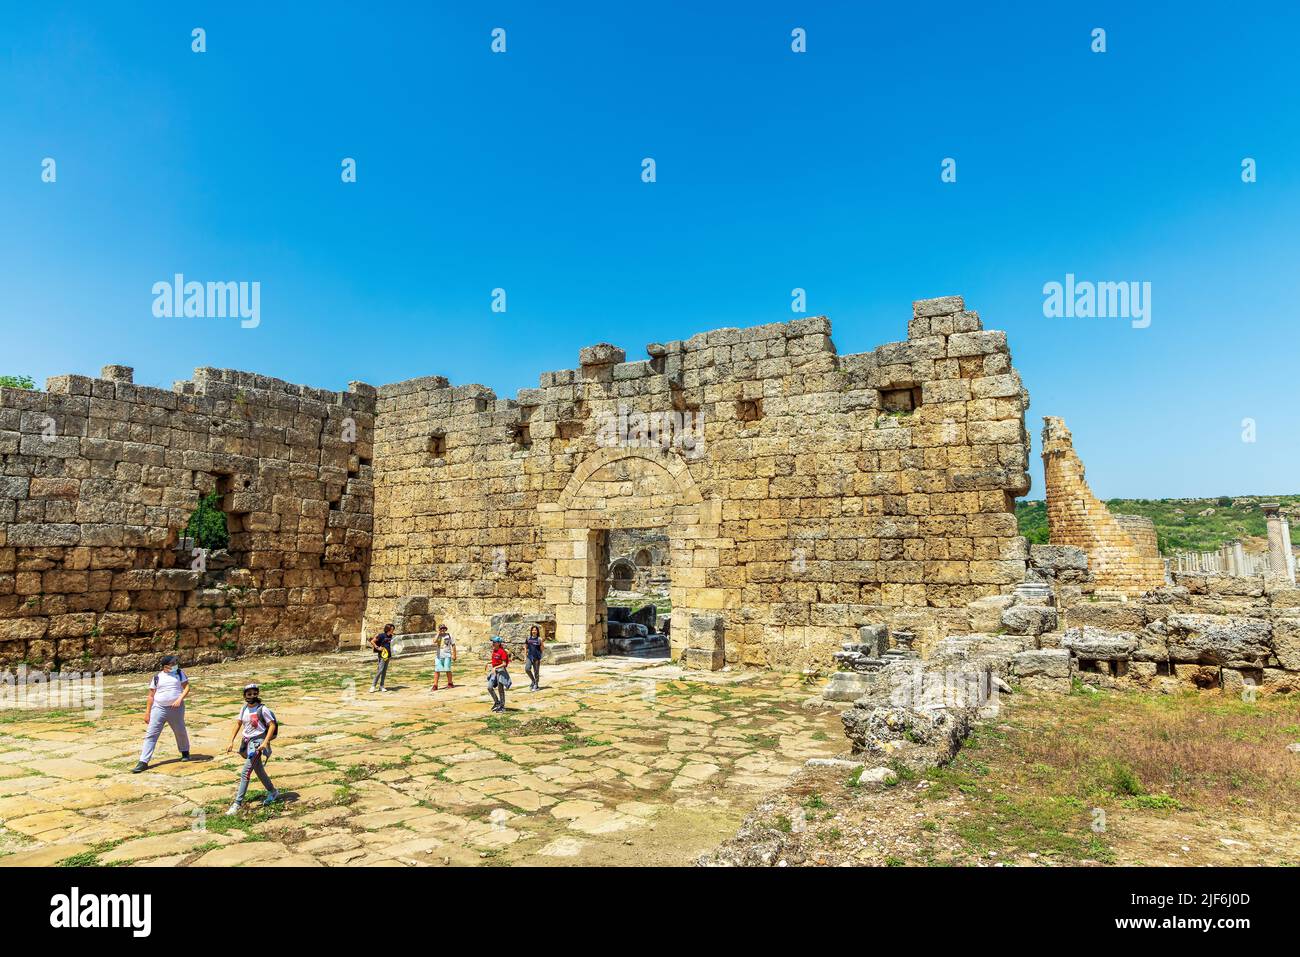 Popolare destinazione turistica rovine di Perge, un'antica città greca in Anatolia, ora nella provincia di Antalya in Turchia. Foto Stock